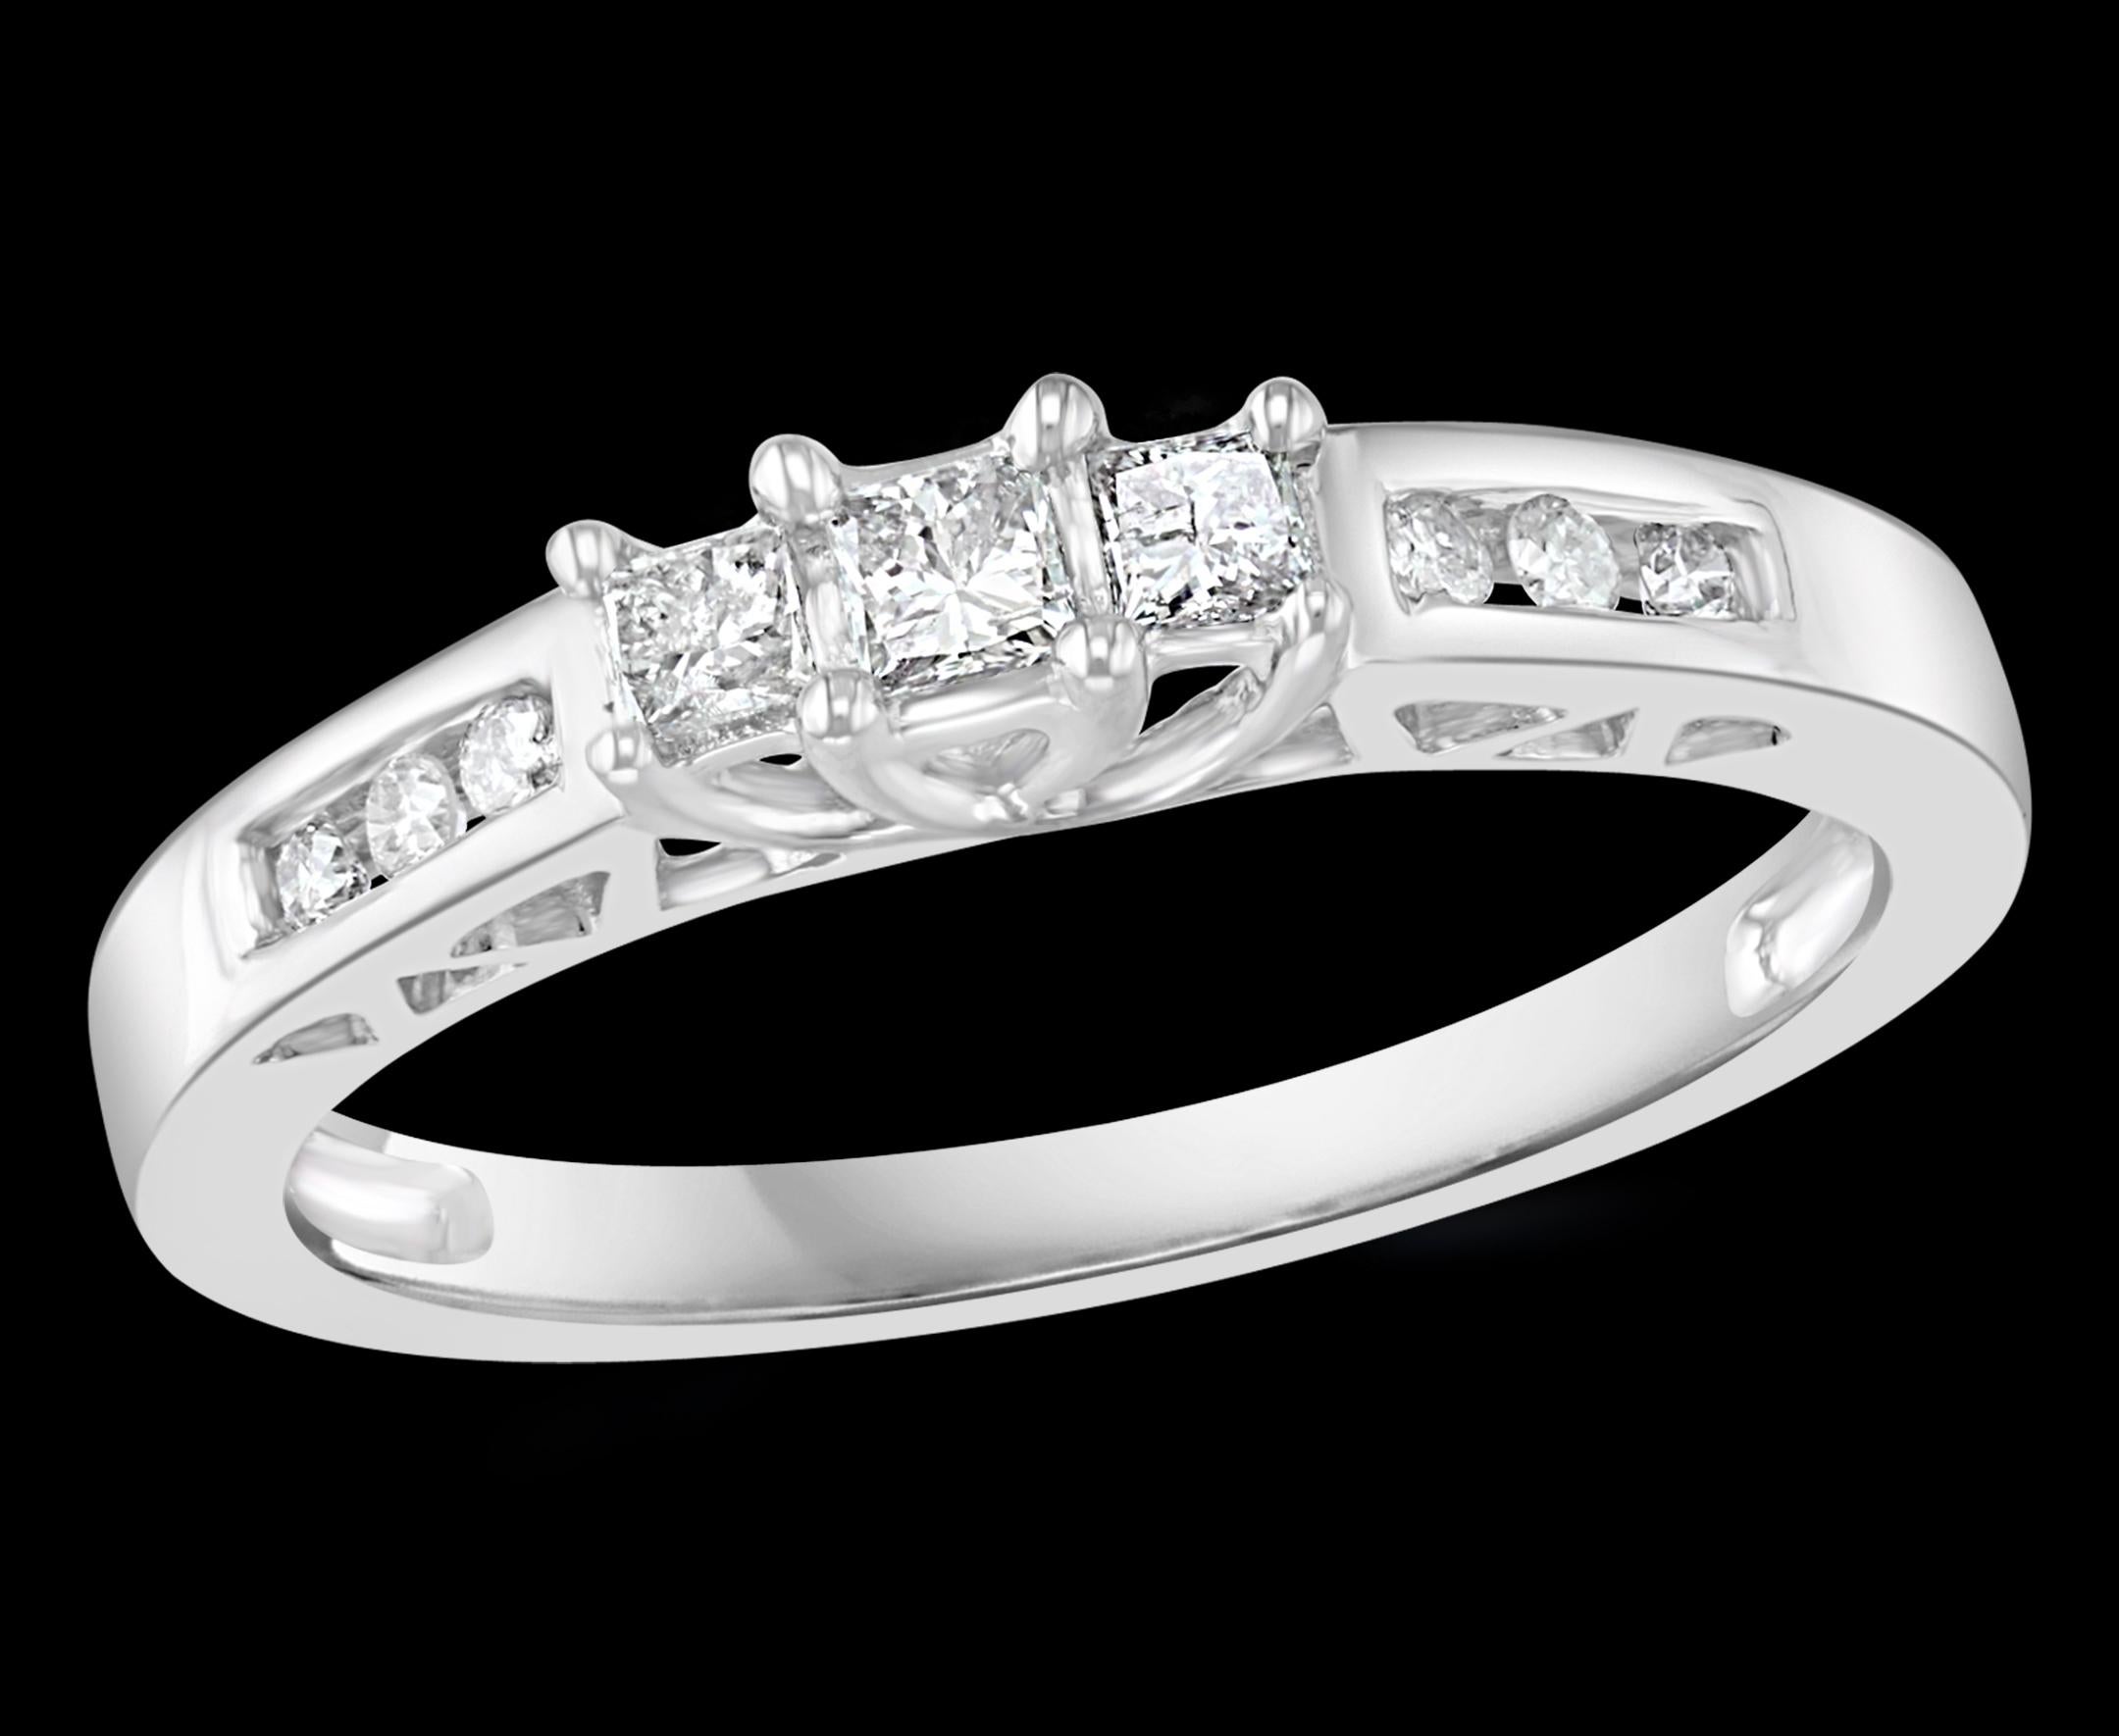 Dreistein-Diamant  Traditionell  Ring/Band 14 Karat Weißgold

Drei Diamanten im Princess-Schliff  nebeneinander, gefolgt von drei runden Diamanten im Brillantschliff auf jeder Seite, die ein halbes Band bilden 
Diamant SI  qualität und H/I